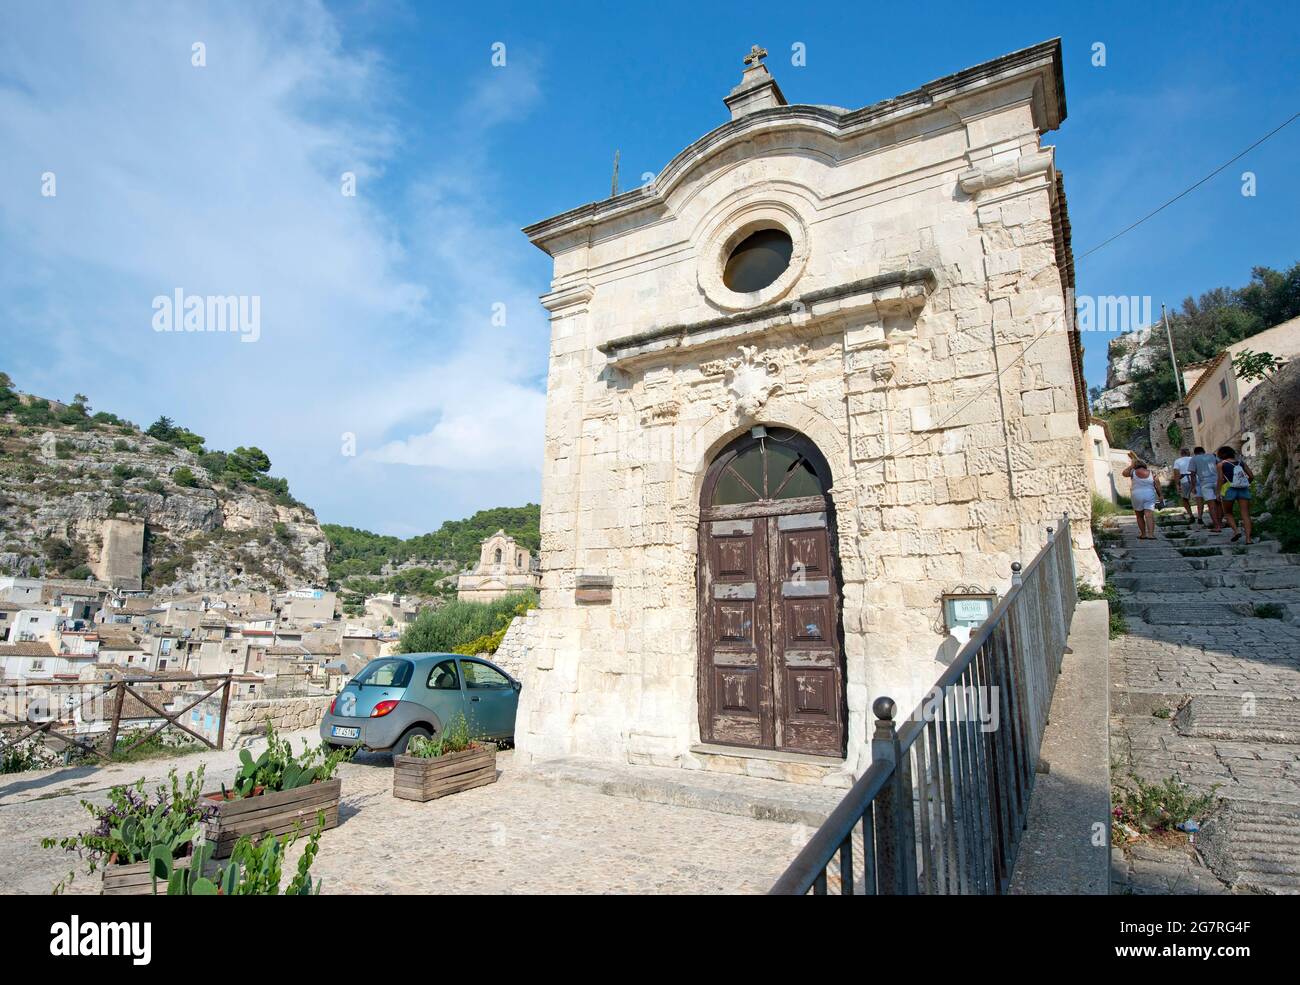 church of San vito (naturalistic museum),Scicli,Sicily,Italy Stock Photo